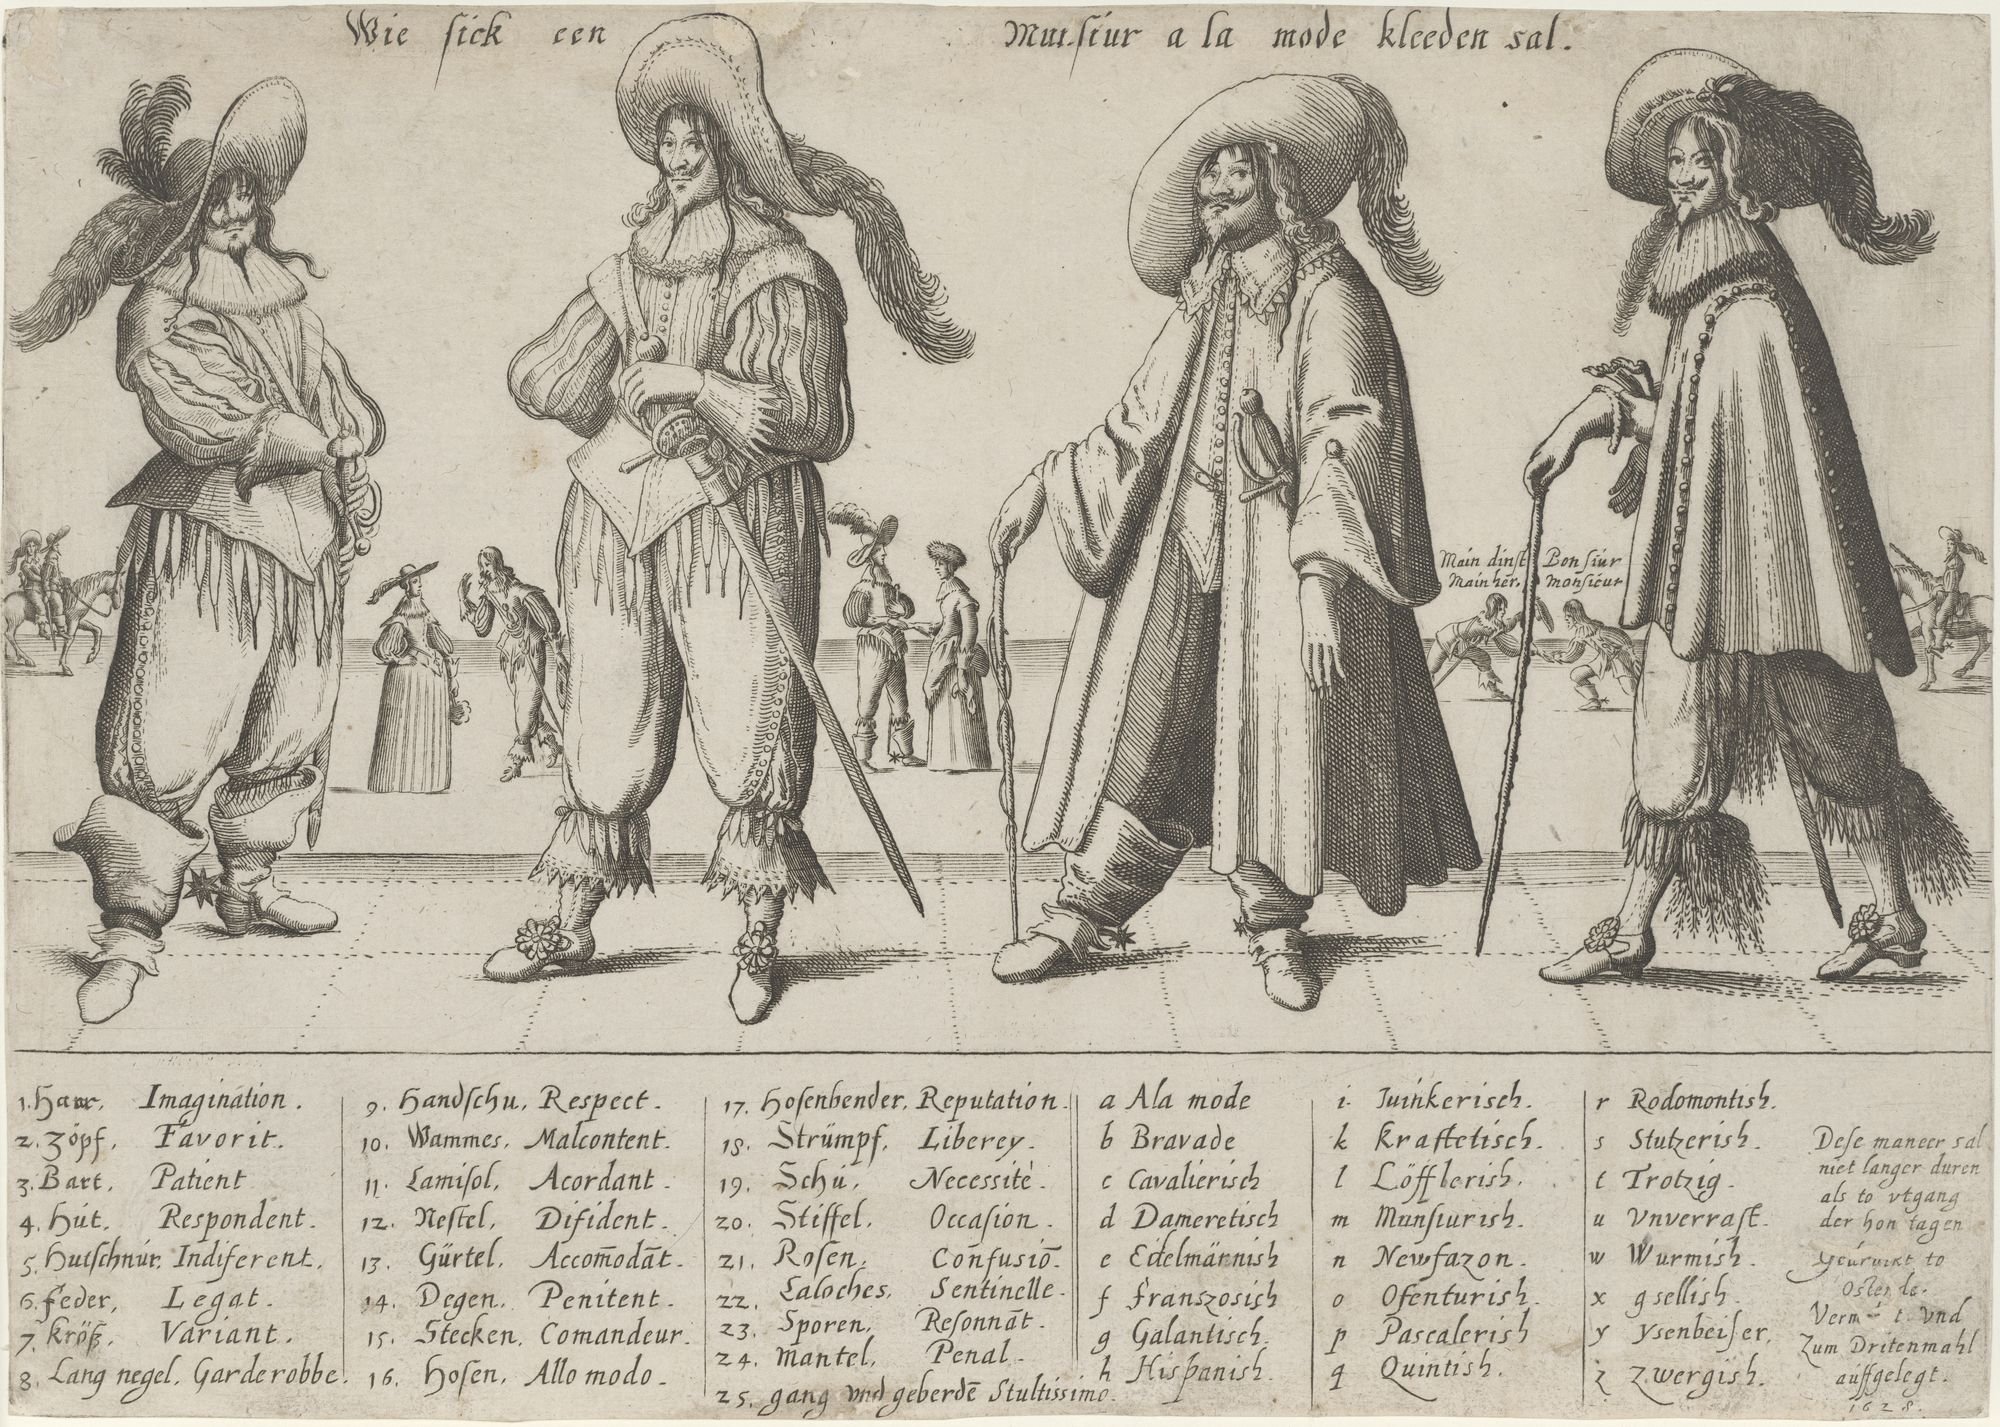 Wie sick een Munsiur a la mode kleeden sal. (Kulturstiftung Sachsen-Anhalt Public Domain Mark)